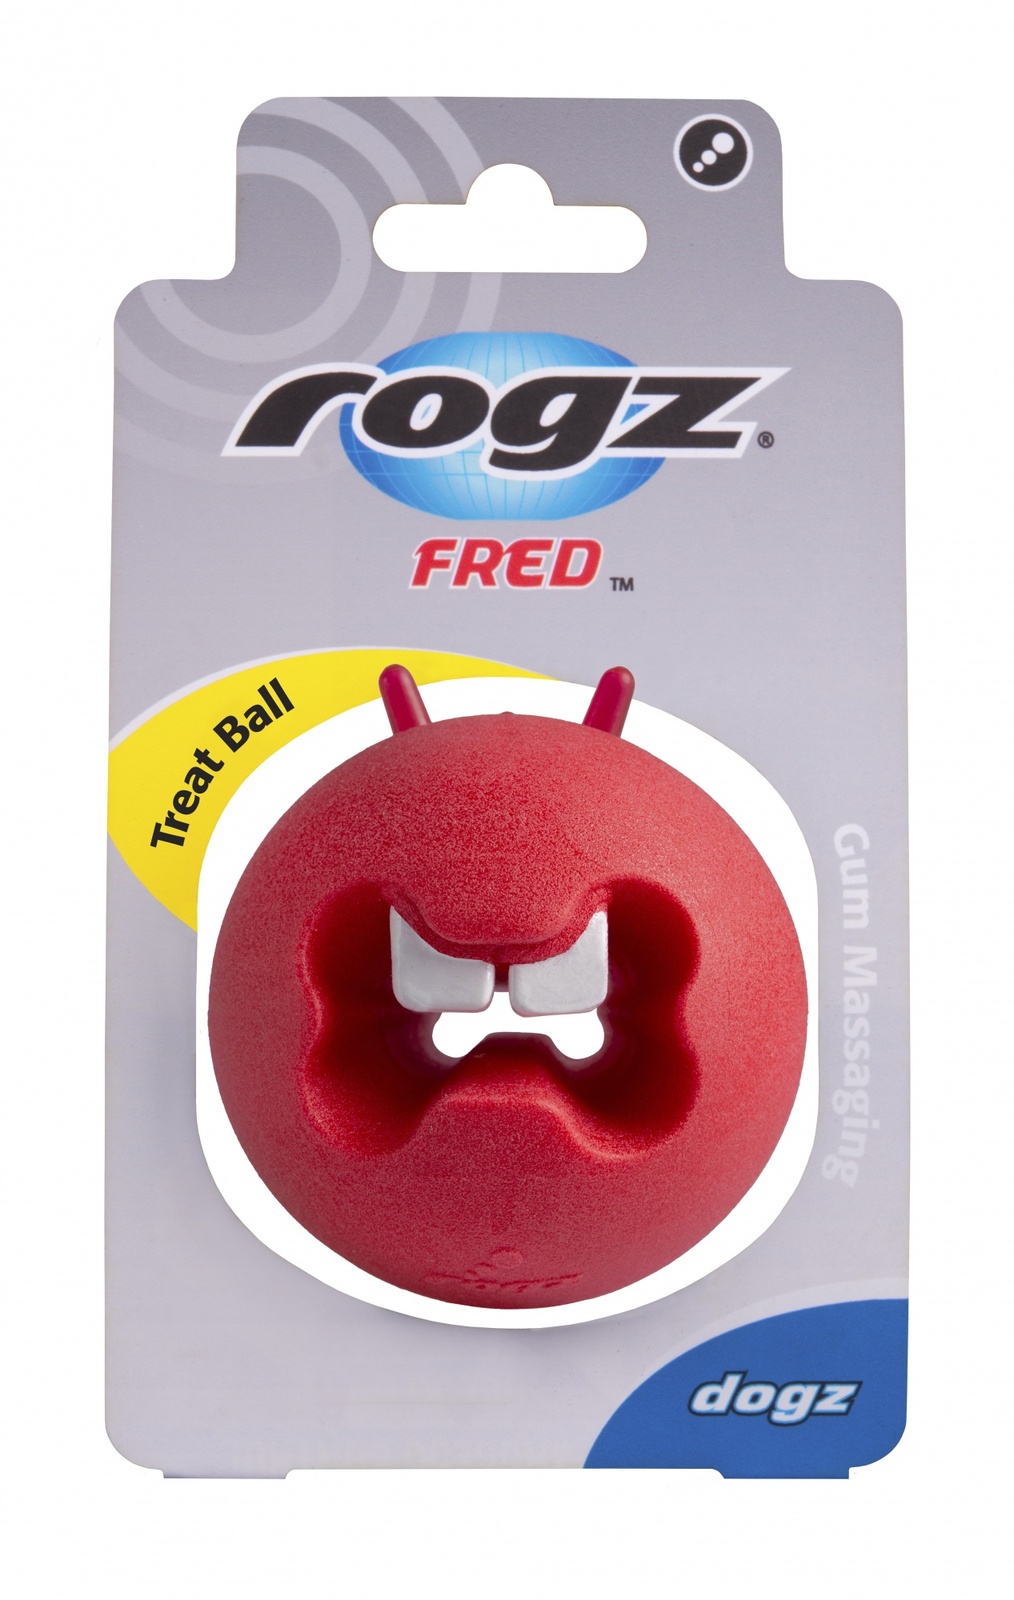 Rogz игрушка с отверстиями для лакомств и массажными насечками средняя, красная (50 г) Rogz игрушка с отверстиями для лакомств и массажными насечками средняя, красная (50 г) - фото 1